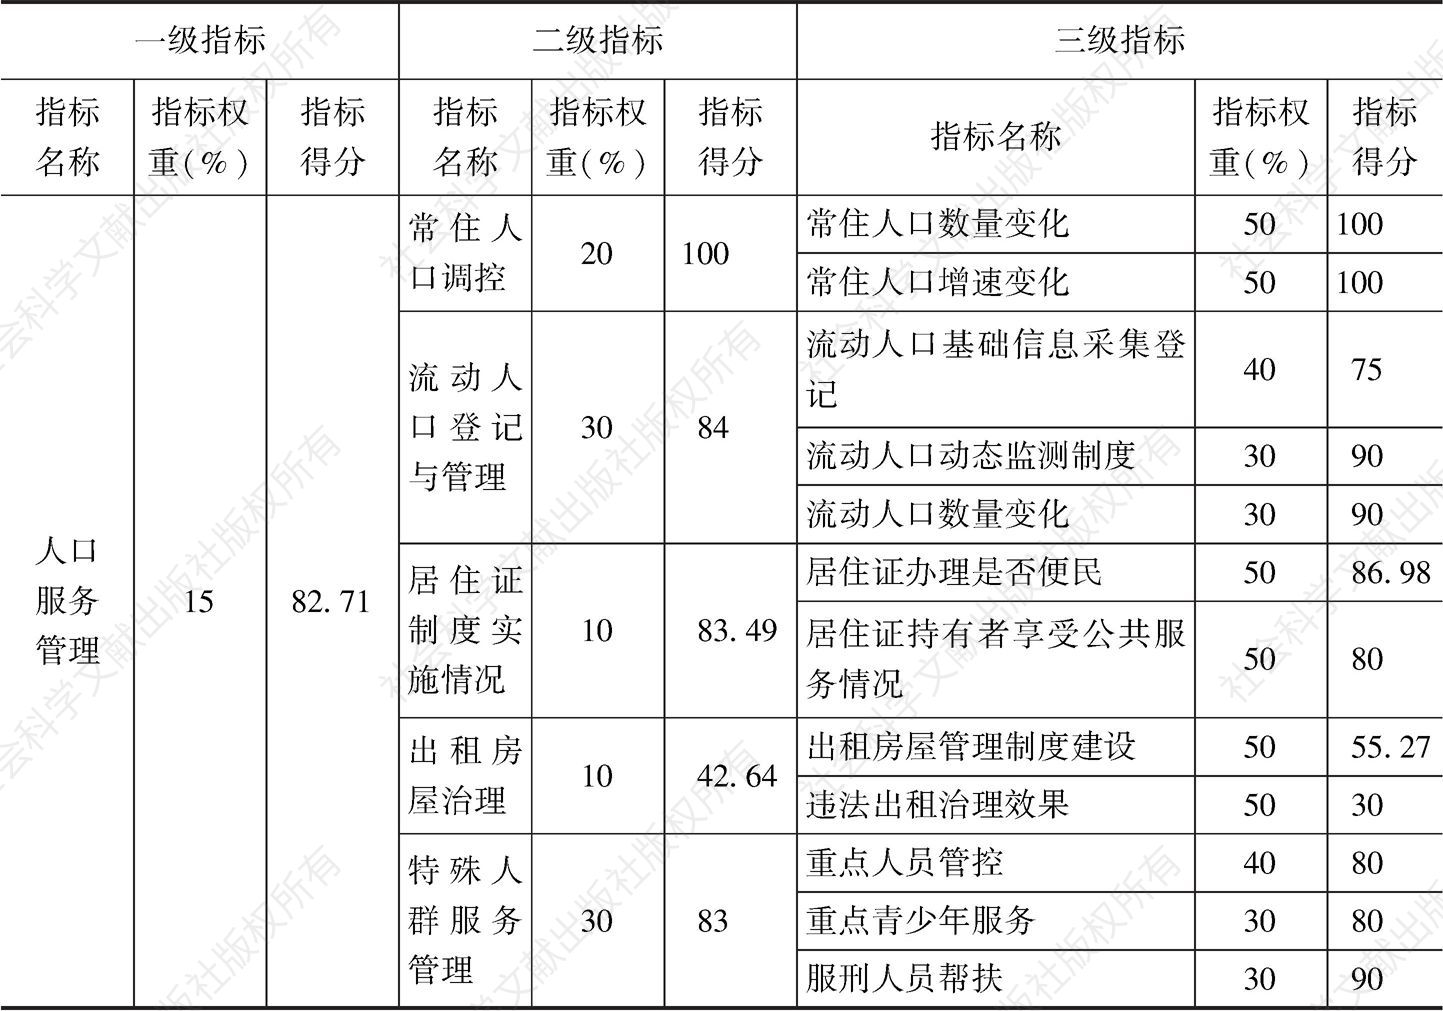 表2 平安北京建设中流动人口服务管理总体评估结果